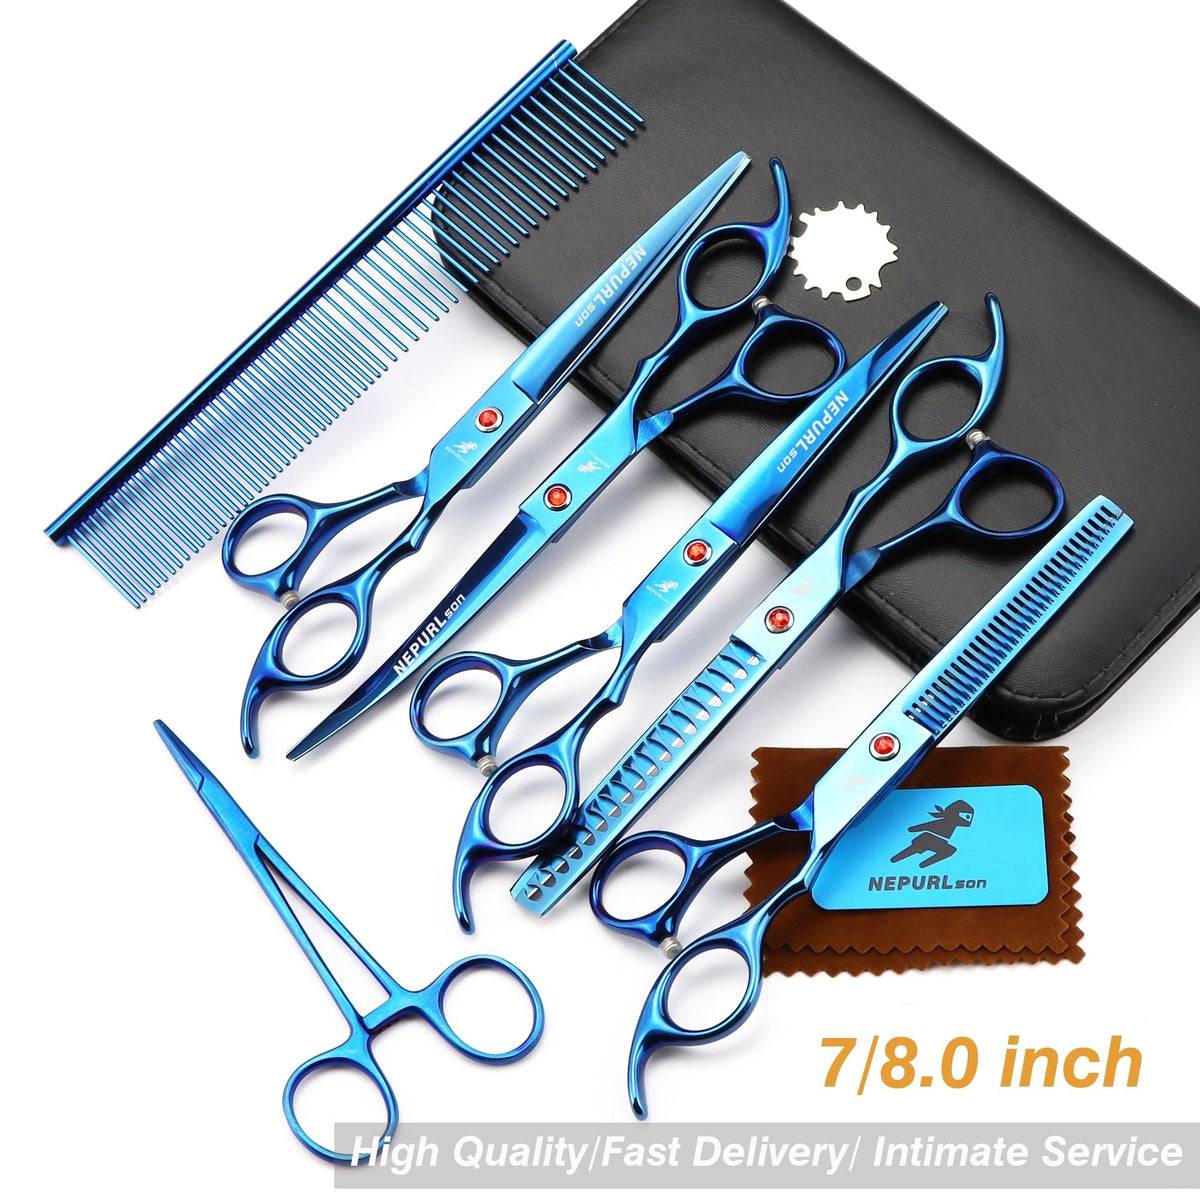 Pet grooming scissors set